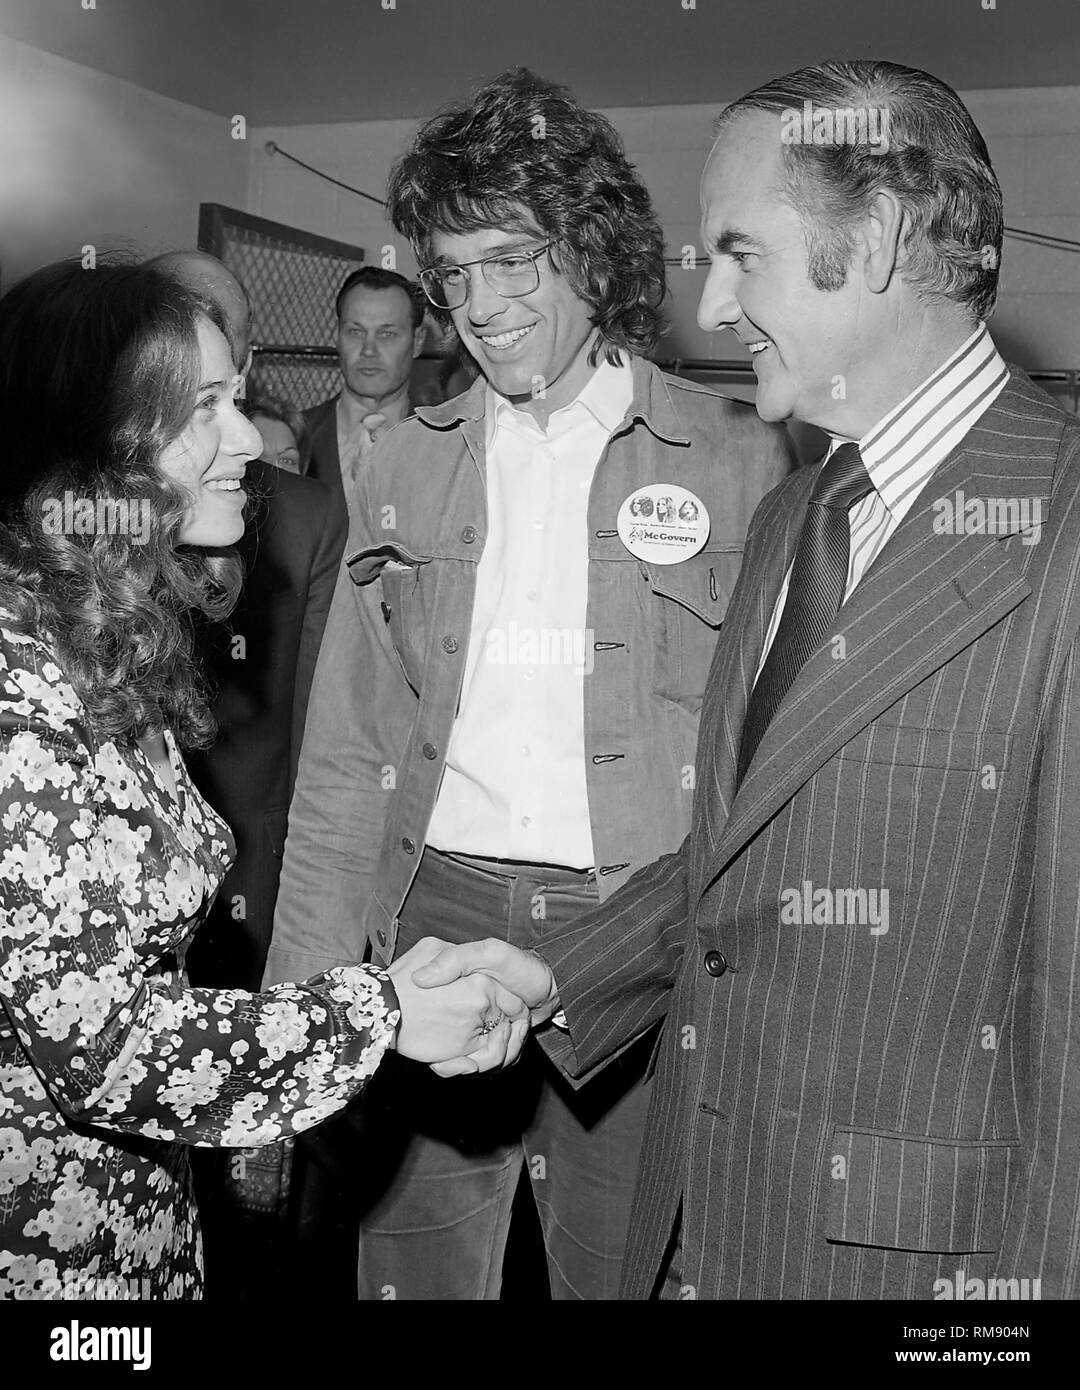 Sängerin Carole King grüßt Präsidentschaftskandidat George McGovern, bevor ein Benefizkonzert im April 15, 1972 Auf dem Forum in Los Angeles mit James Taylor Carole King, Barbra Streisand und Quincy Jones. Stockfoto